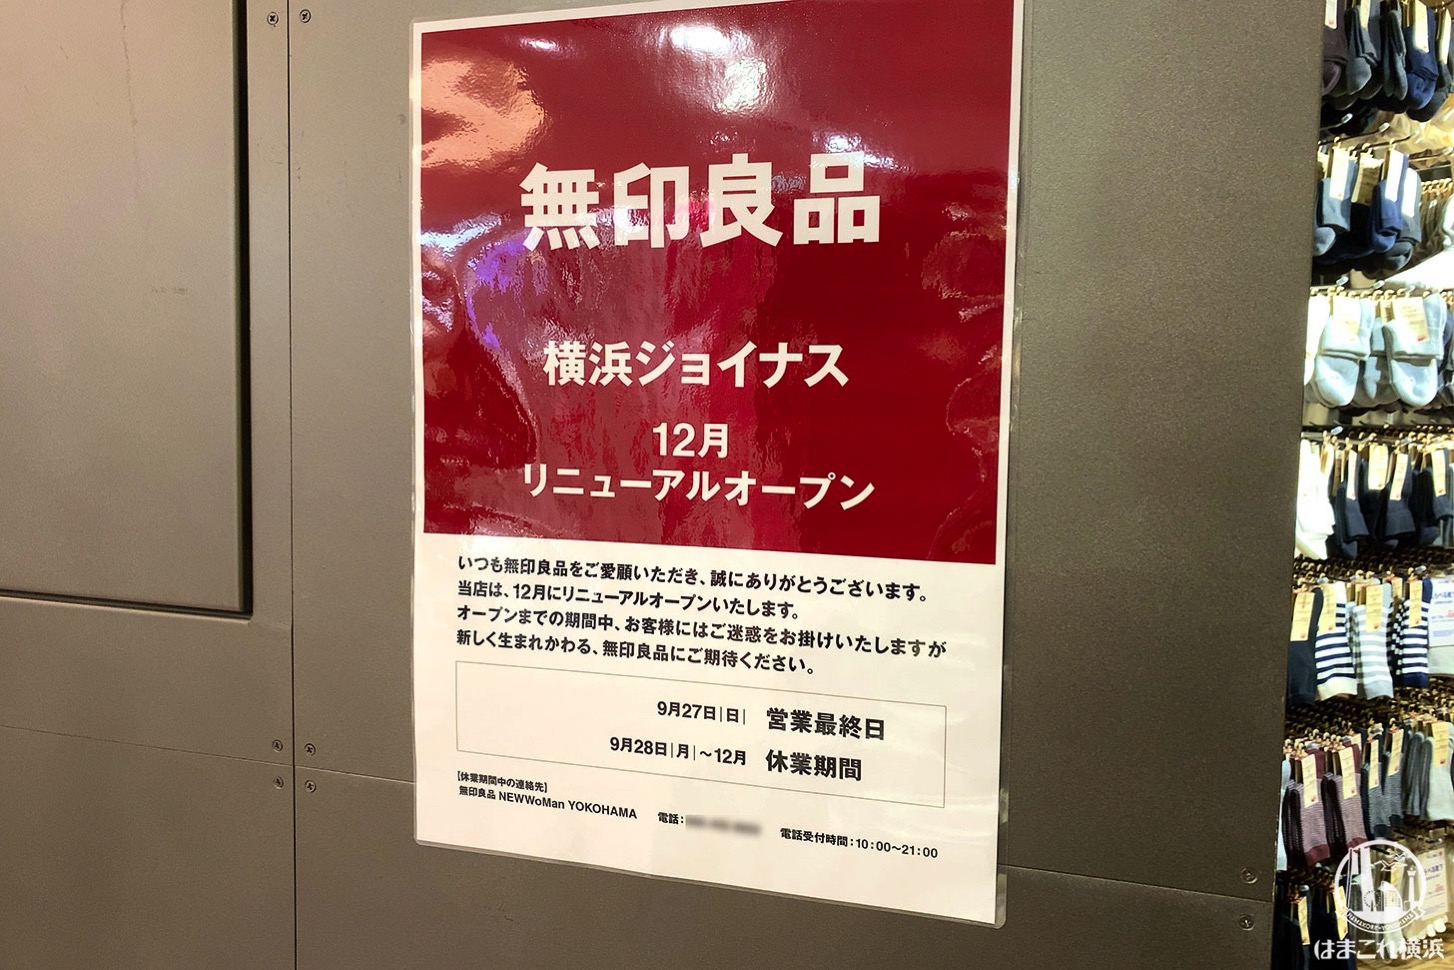 無印良品 横浜ジョイナス リニューアルオープンのお知らせ